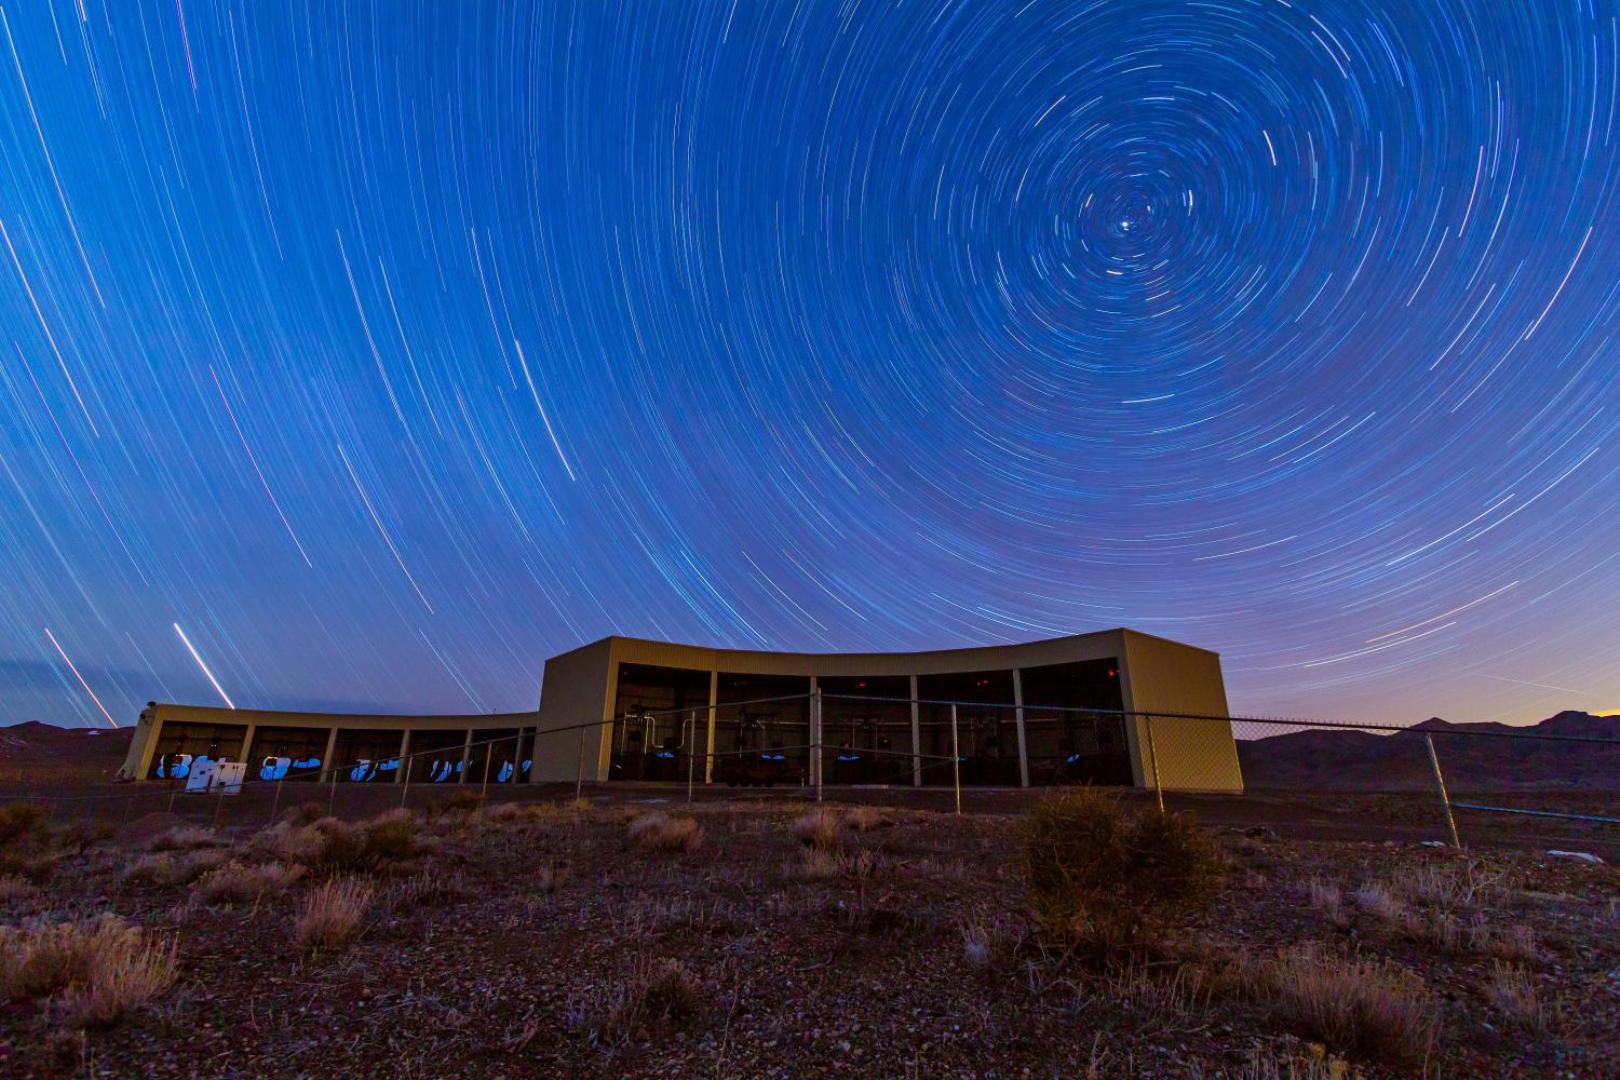 Cette photo&nbsp;montre la station de détection de fluorescence Middle Drum dans le vaste observatoire de rayons cosmiques&nbsp;du&nbsp;Telescope Array dans l'Utah. L'observatoire actuel comprend trois de ces stations de télescopes, qui contiennent des miroirs pour détecter de faibles éclairs bleus dans le ciel lorsqu'un rayon cosmique entrant frappe des noyaux dans l'atmosphère. Les instruments sont utilisés par des scientifiques du Japon, de l'Université de l'Utah et de plusieurs autres pays pour déterminer la source mystérieuse des particules les plus puissantes de l'univers, les rayons cosmiques à très haute énergie.&nbsp;© Ben Stokes, Université de l'Utah